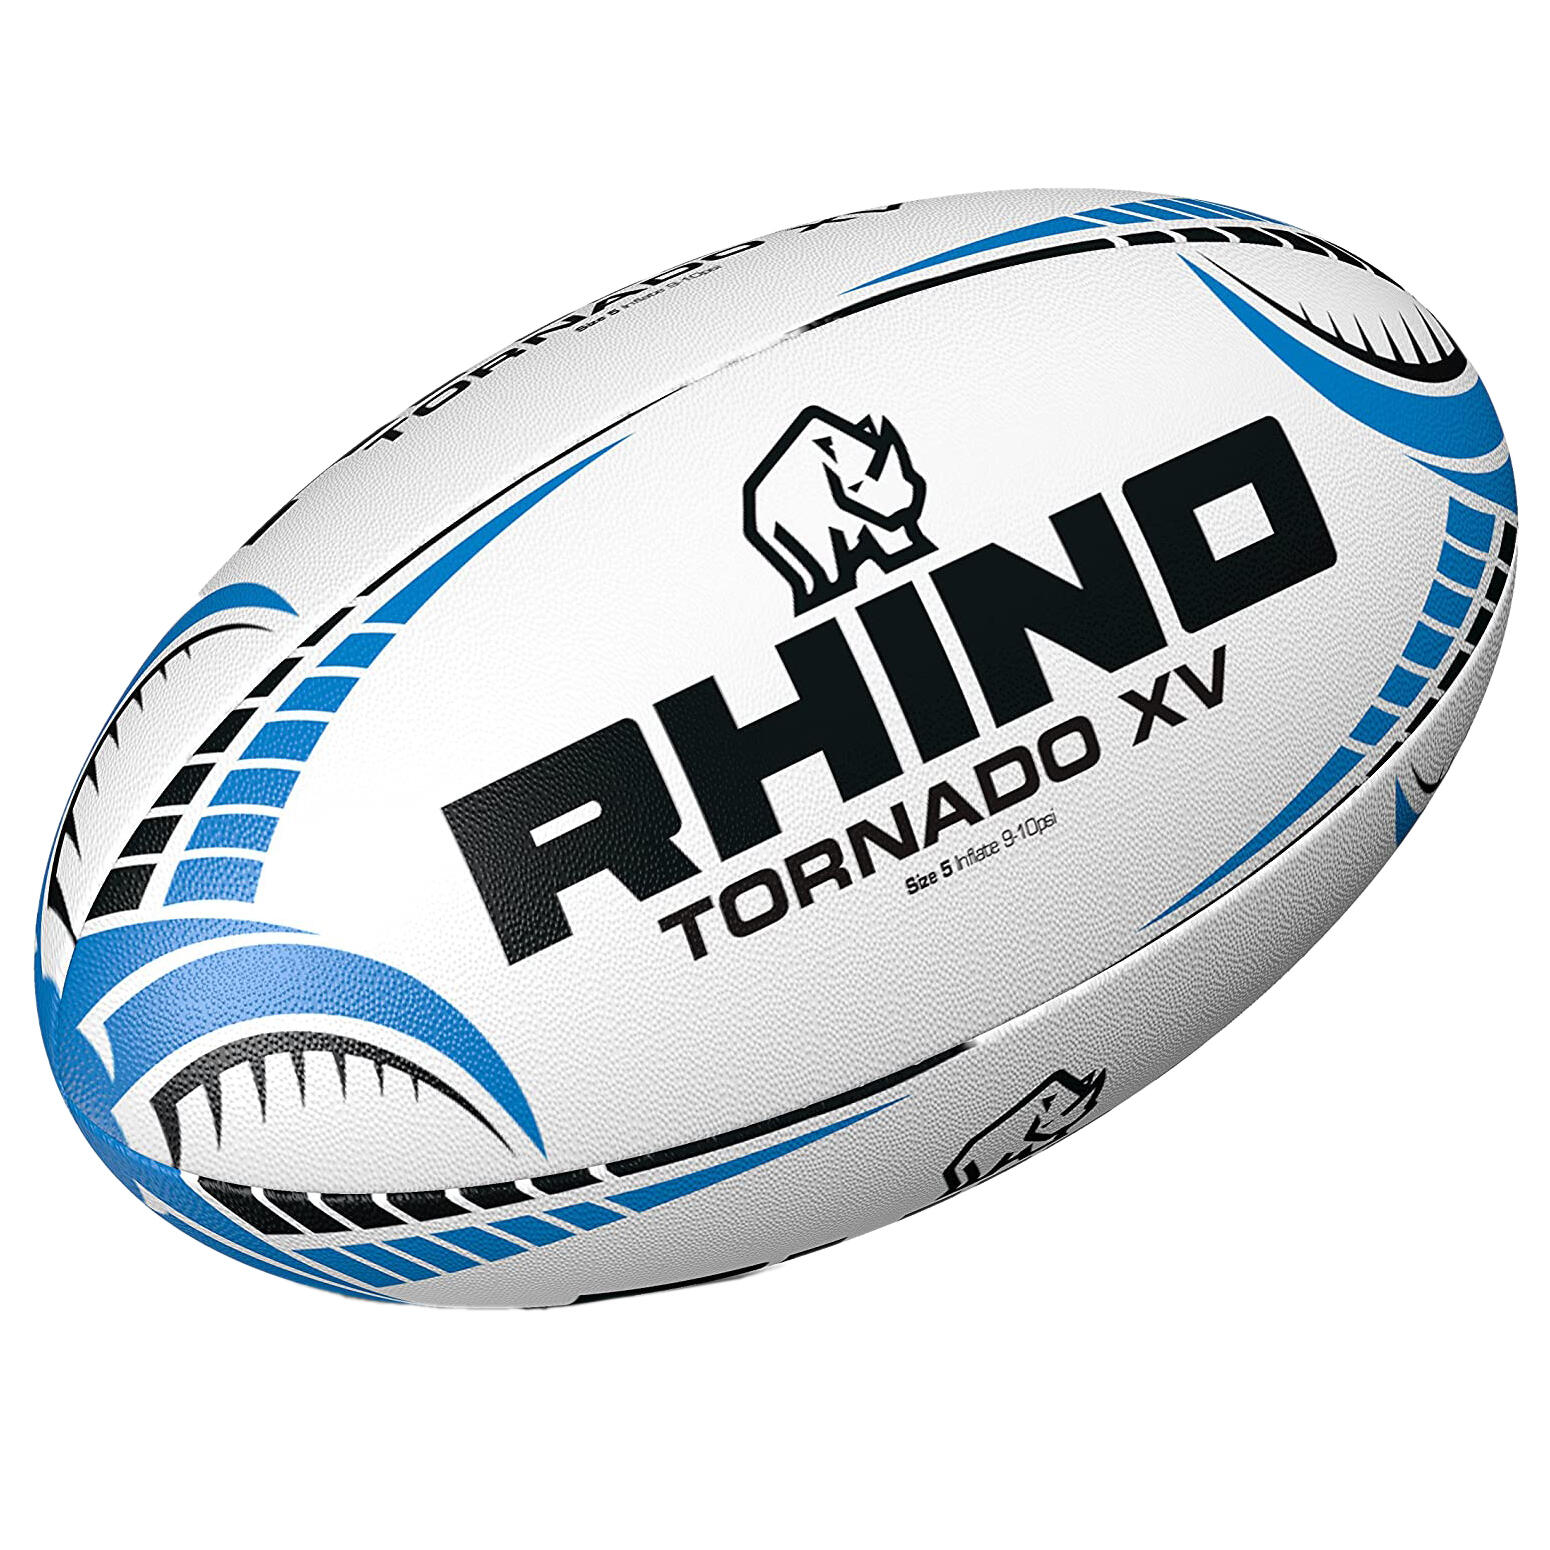 Tornado XV Rugby Ball (White) 4/4